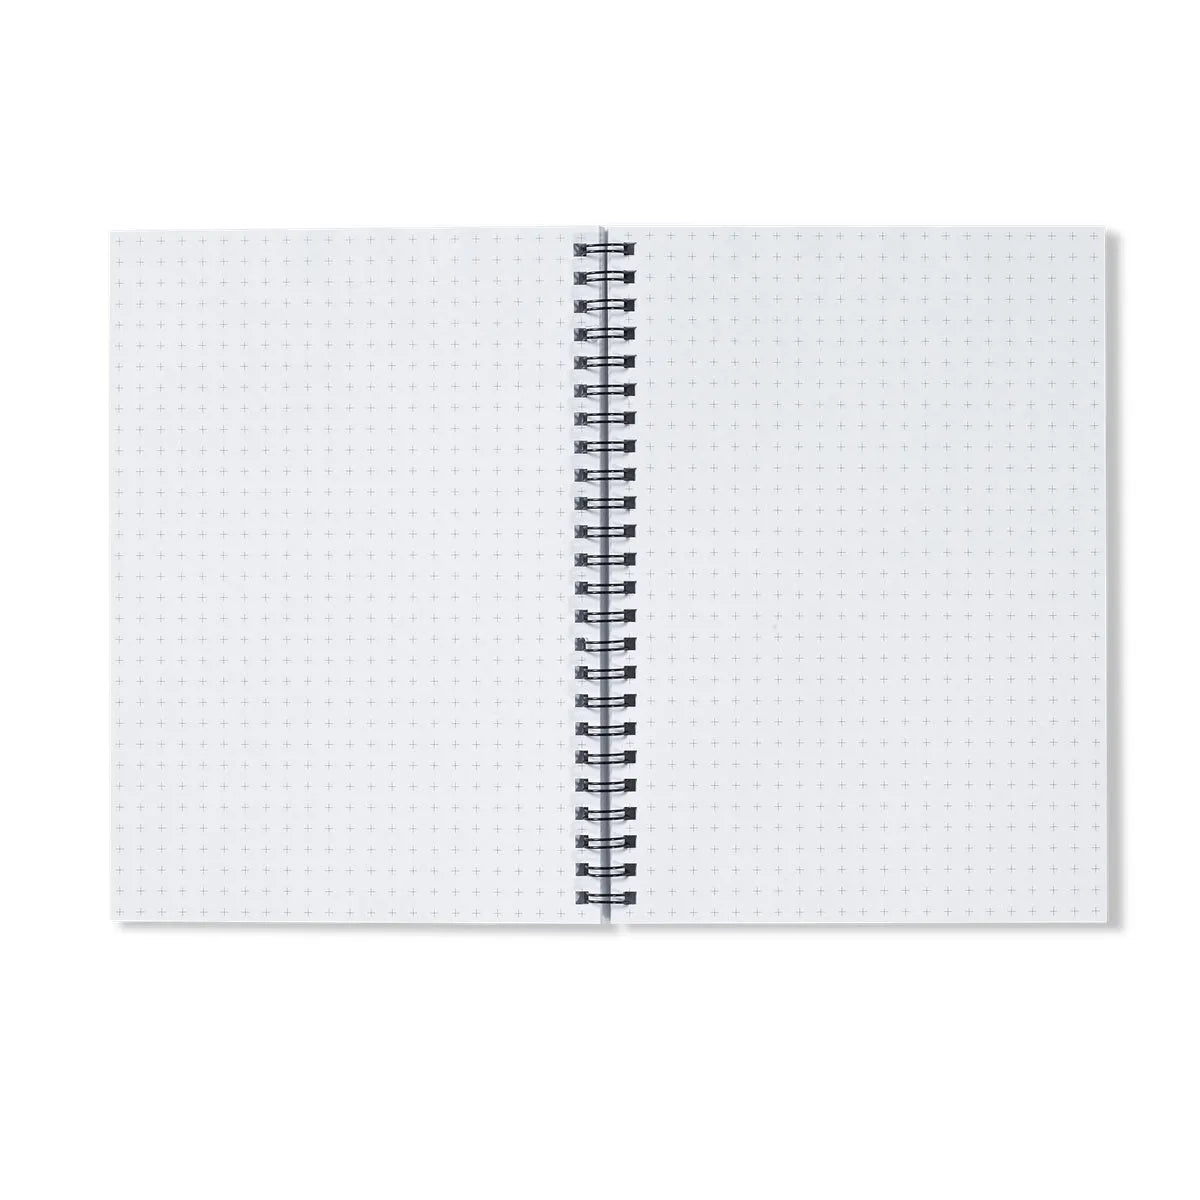 Marigolden Notebook - Notebooks & Notepads - Aesthetic Art